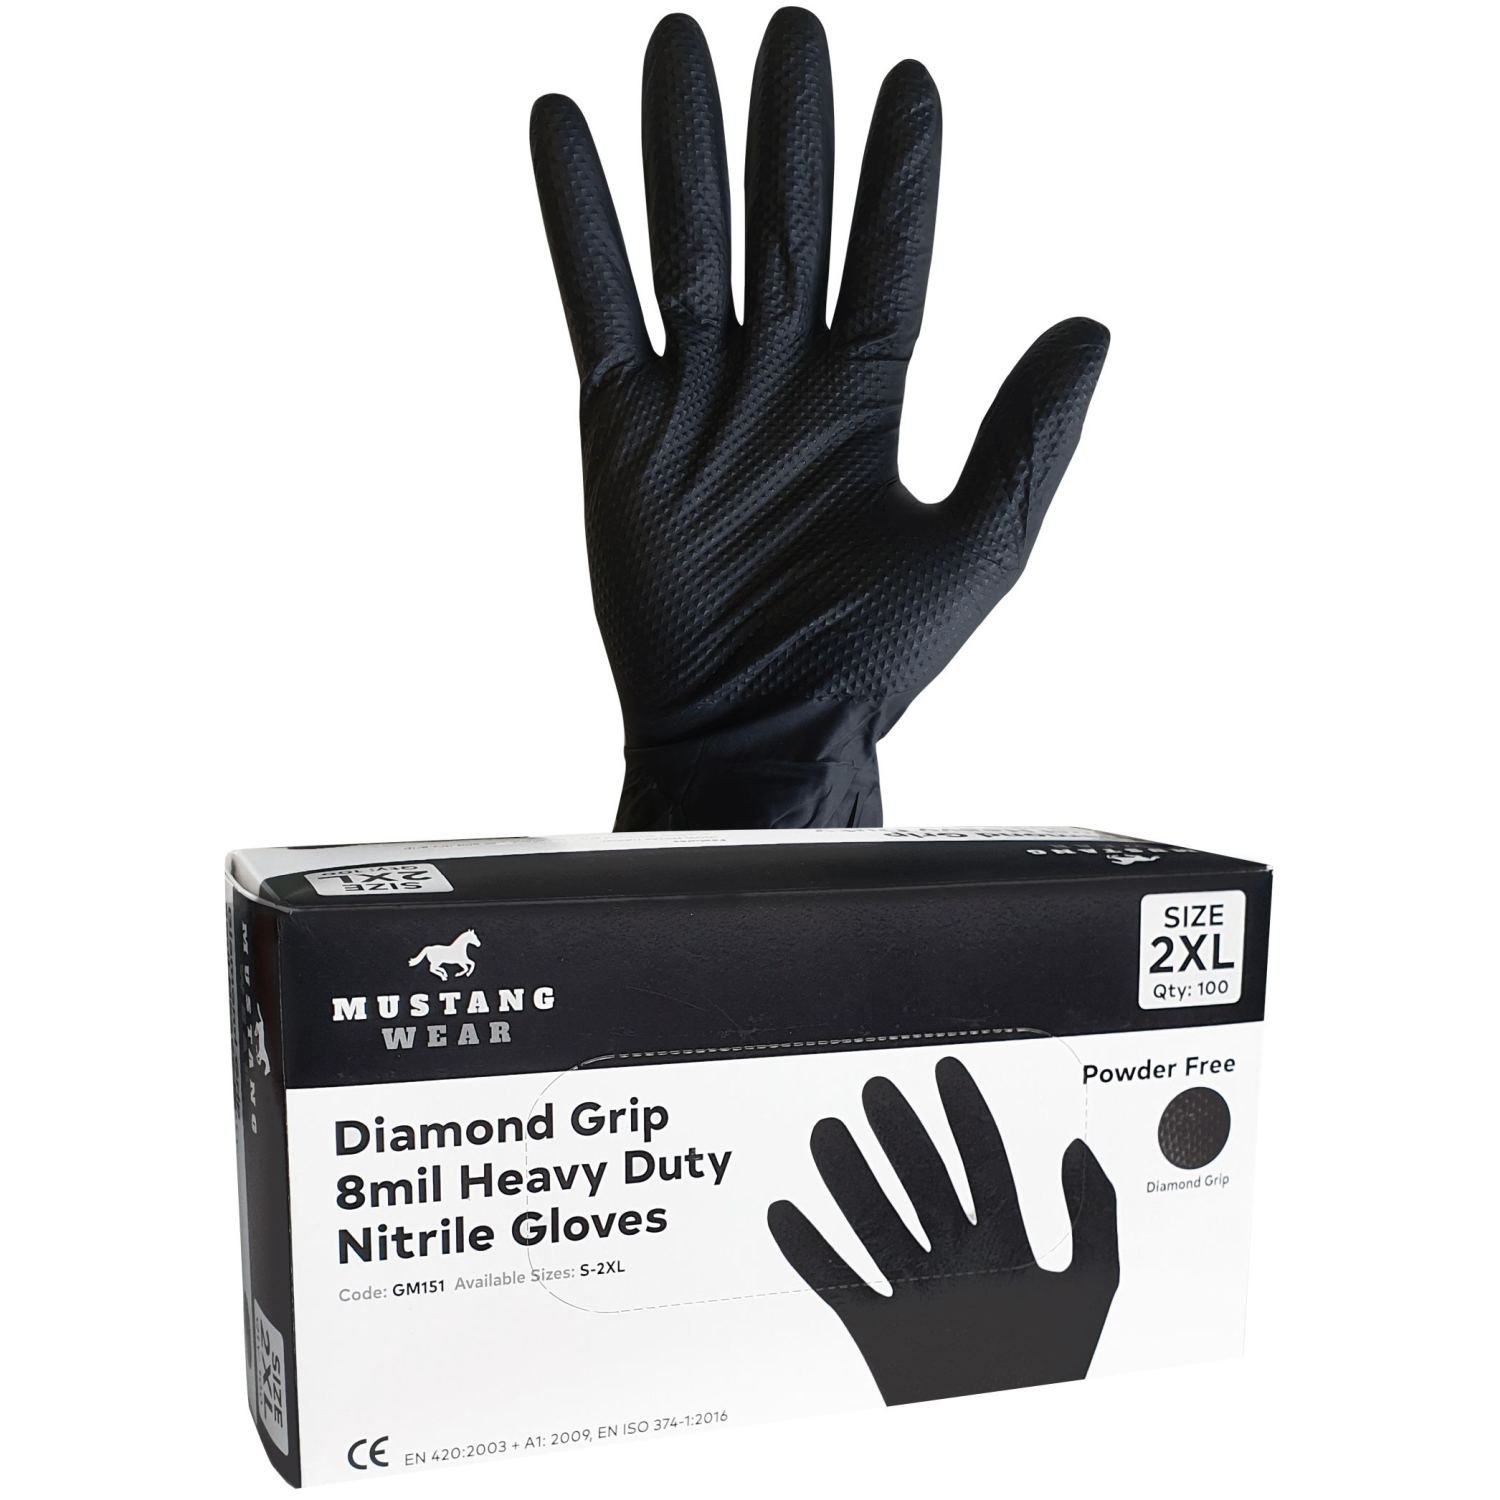 Mustang Wear Black Diamond Grip Heavy Duty Nitrile Gloves Box 100